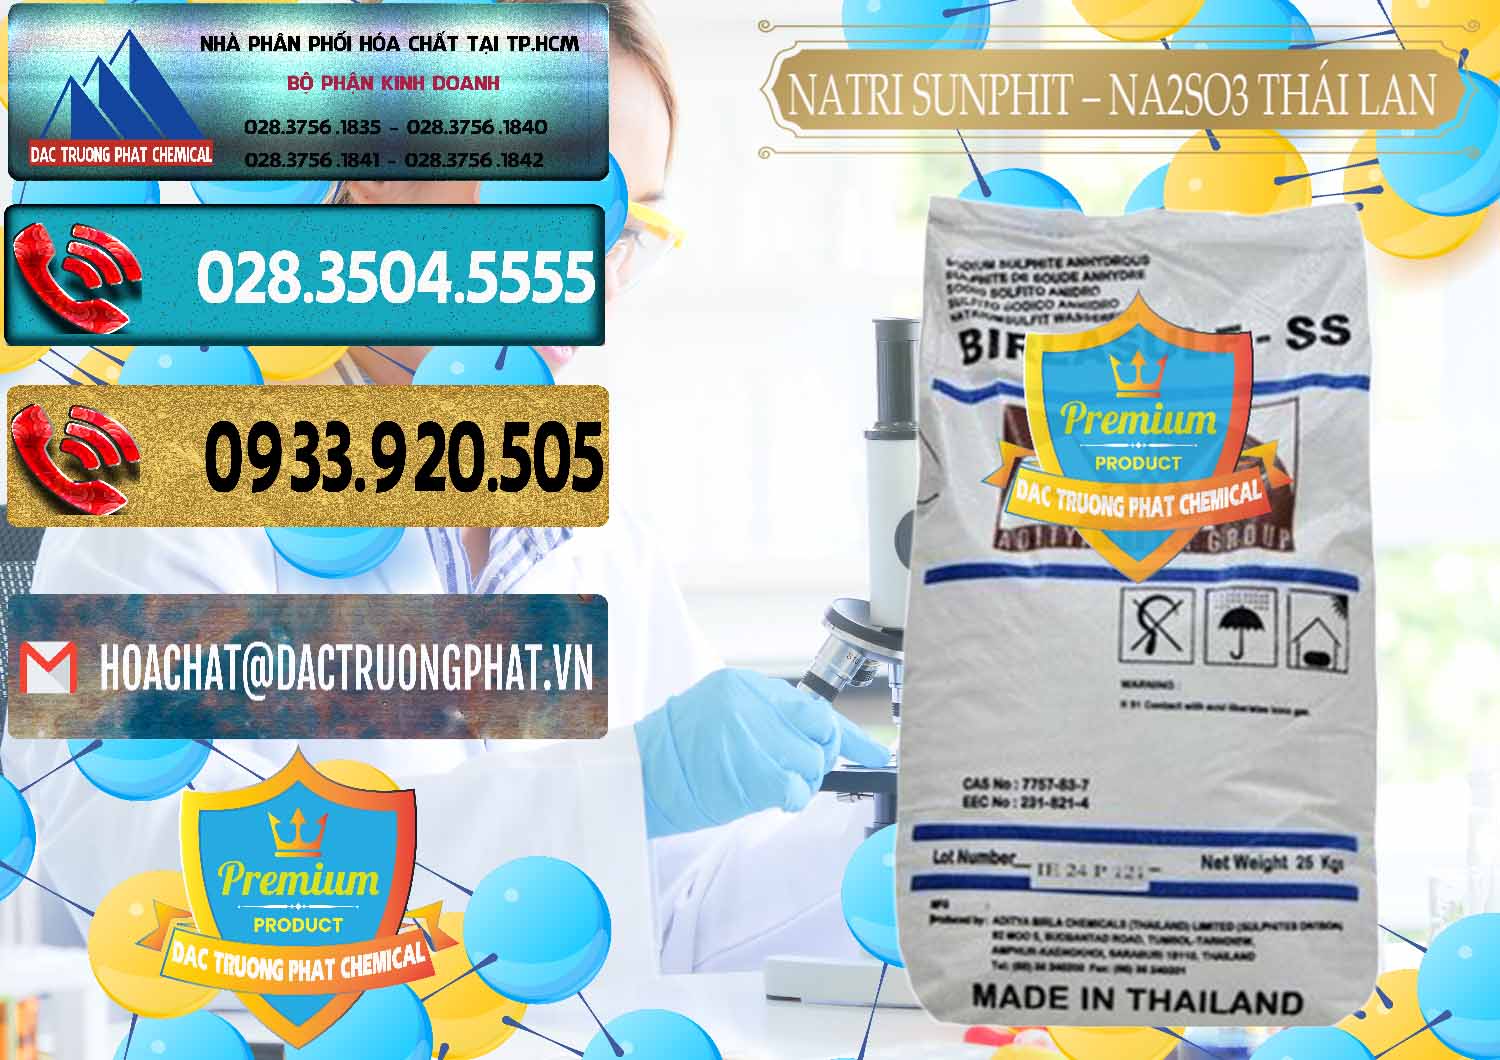 Đơn vị bán & cung ứng Natri Sunphit - NA2SO3 Thái Lan - 0105 - Nhà phân phối & cung cấp hóa chất tại TP.HCM - hoachatdetnhuom.com